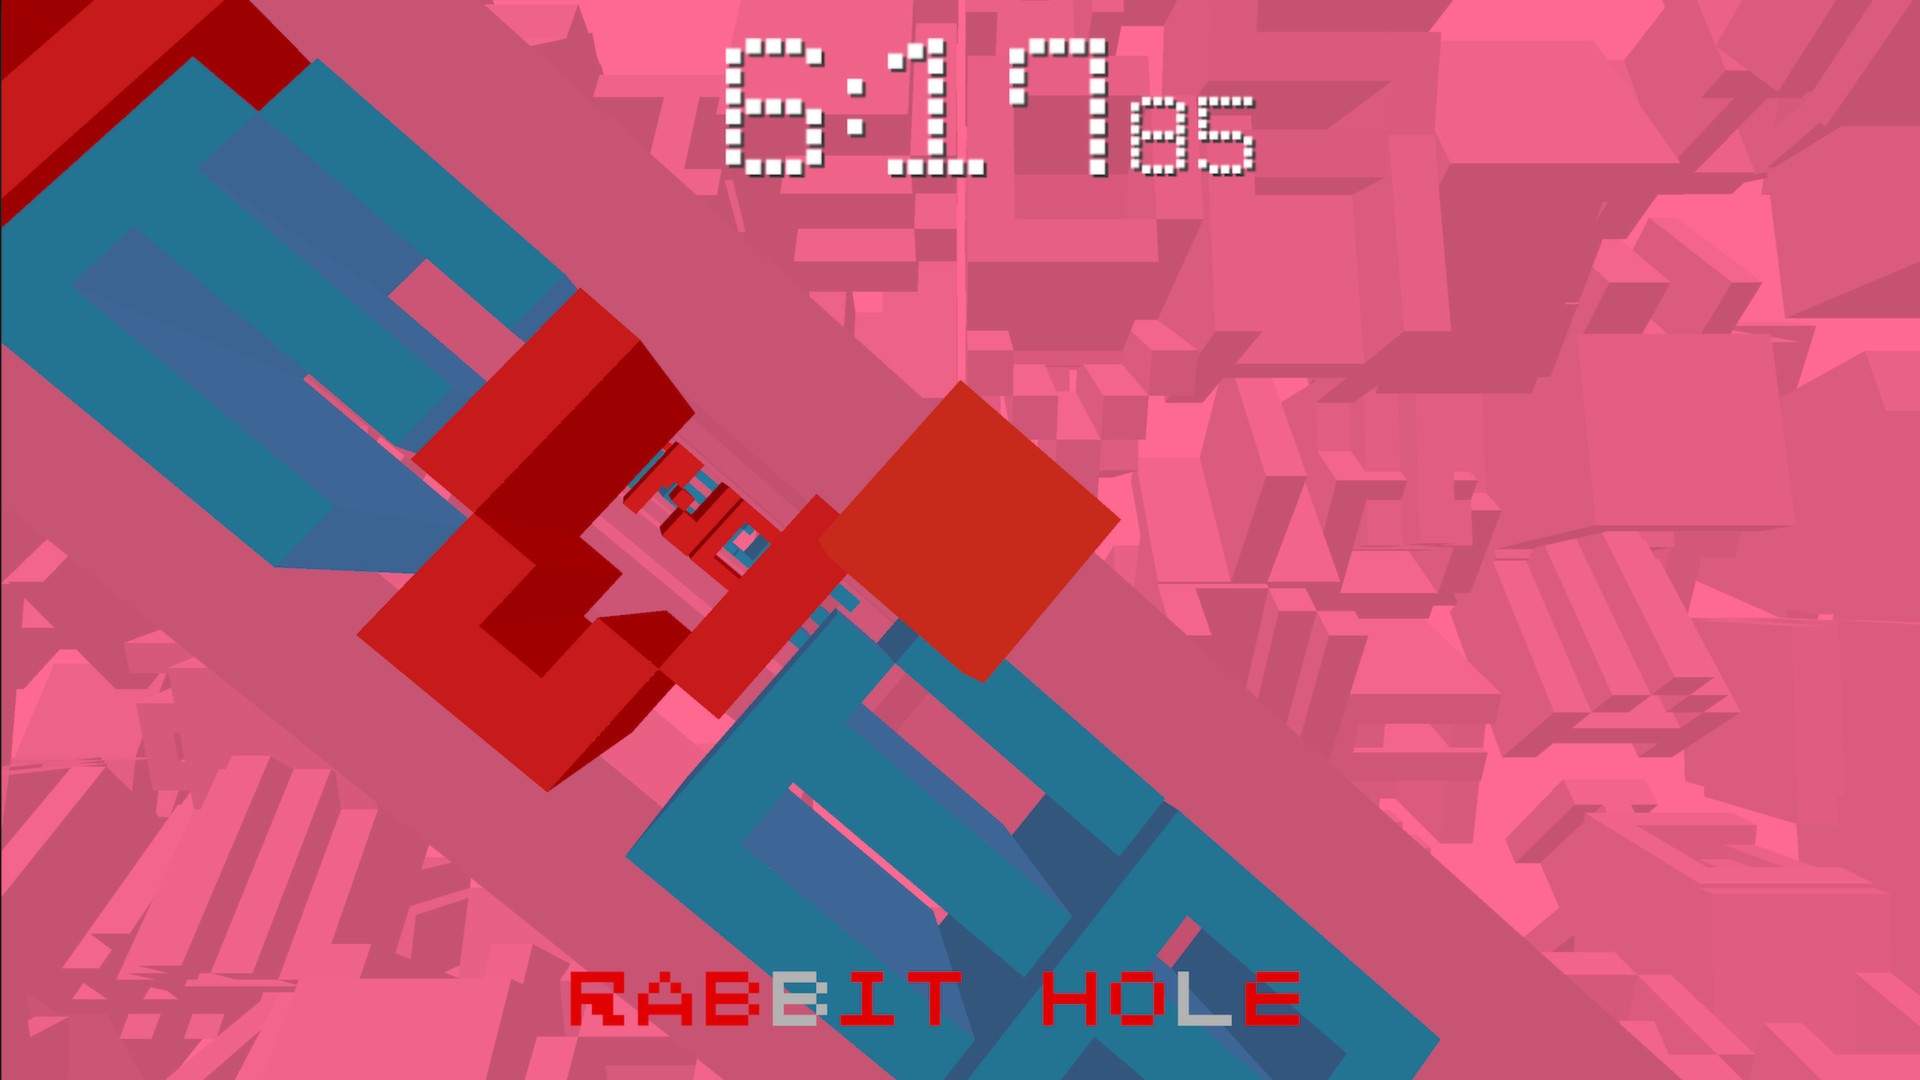 Rabbit hole игра. Rabit hole игра. Rabbit hole 3d. Обои Rabbit hole. Rabbit hole deco скин.